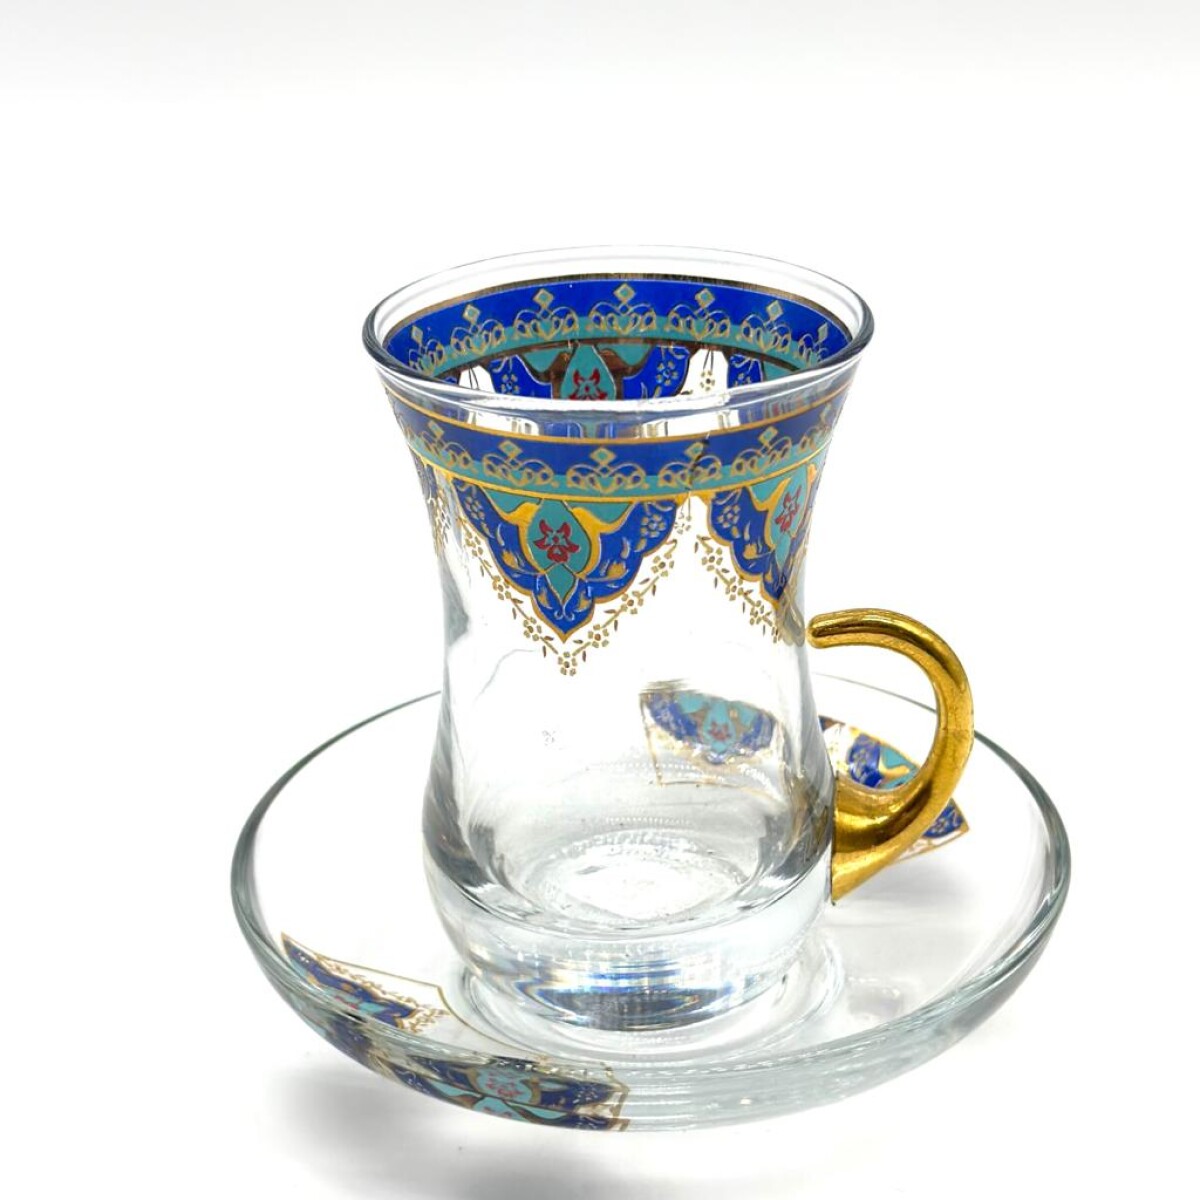 Vaso de té vip arabescos x1 - Azul 